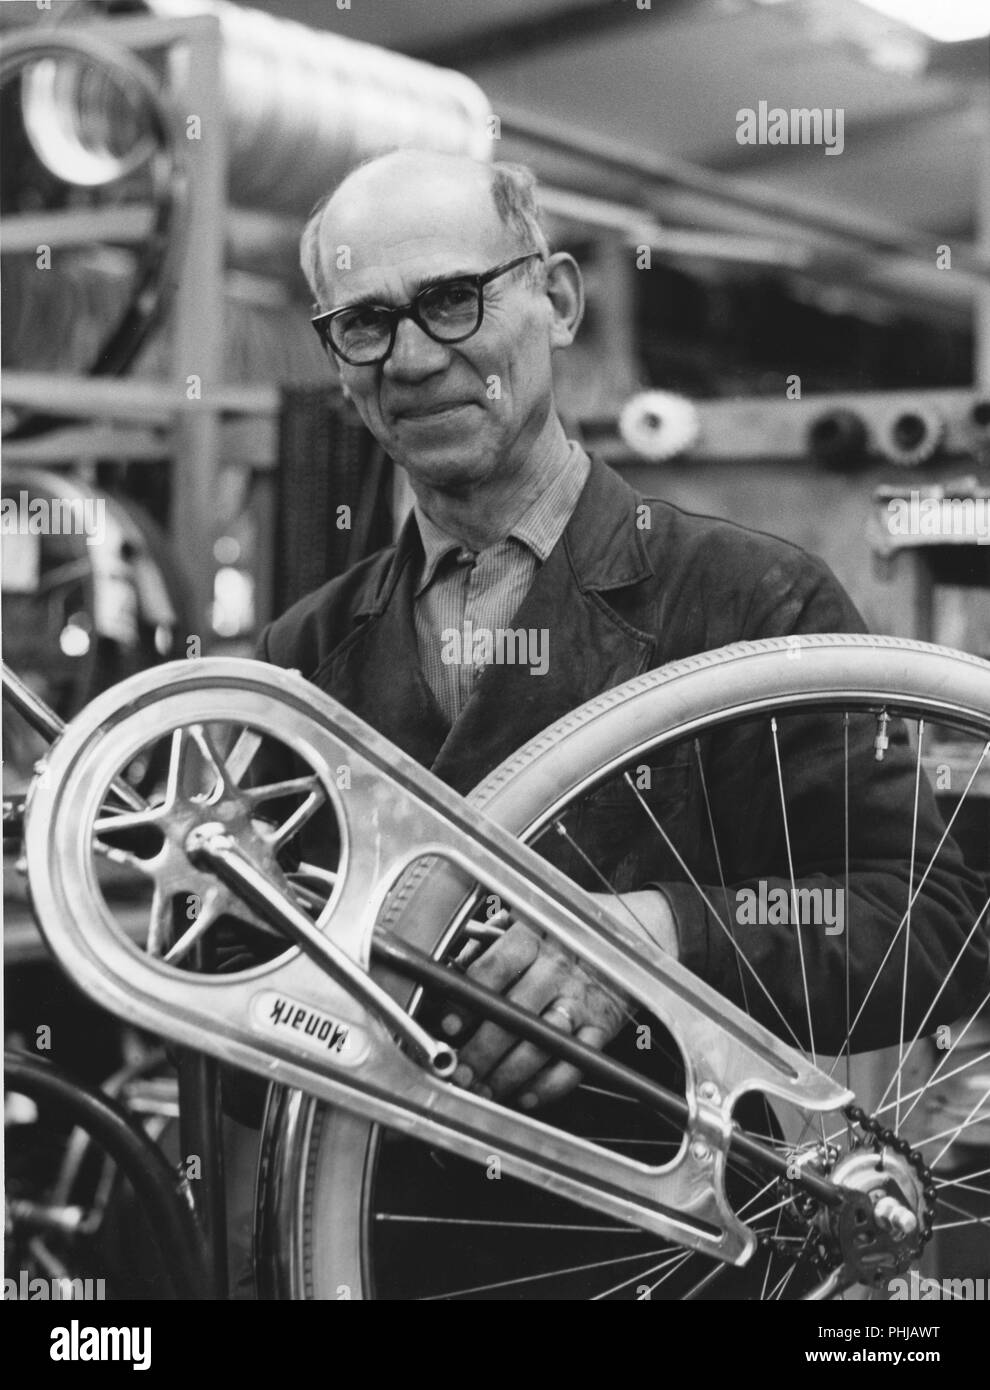 Factory dans les années 1950. Un travailleur de la société moto et vélo Monark en Suède. Il est debout par un vélo qui a presque fini en production. Suède 1958 Banque D'Images